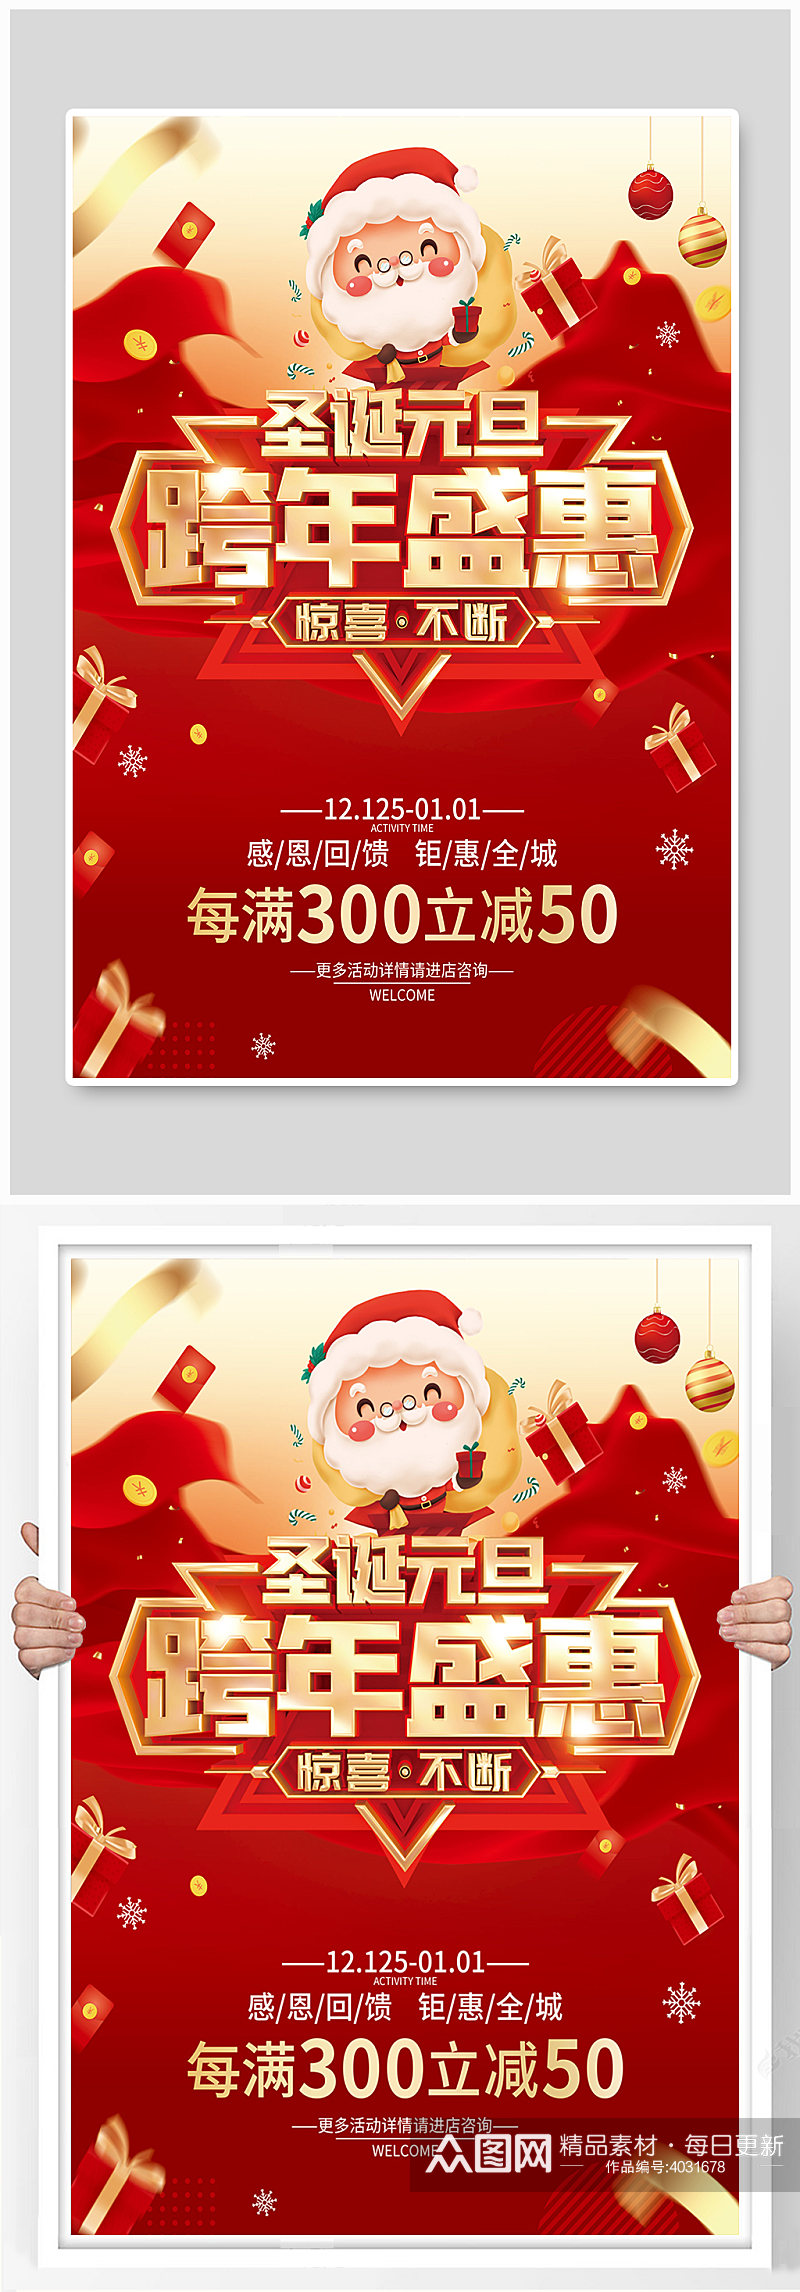 红色简约圣诞节元旦节双旦促销广告活动海报素材